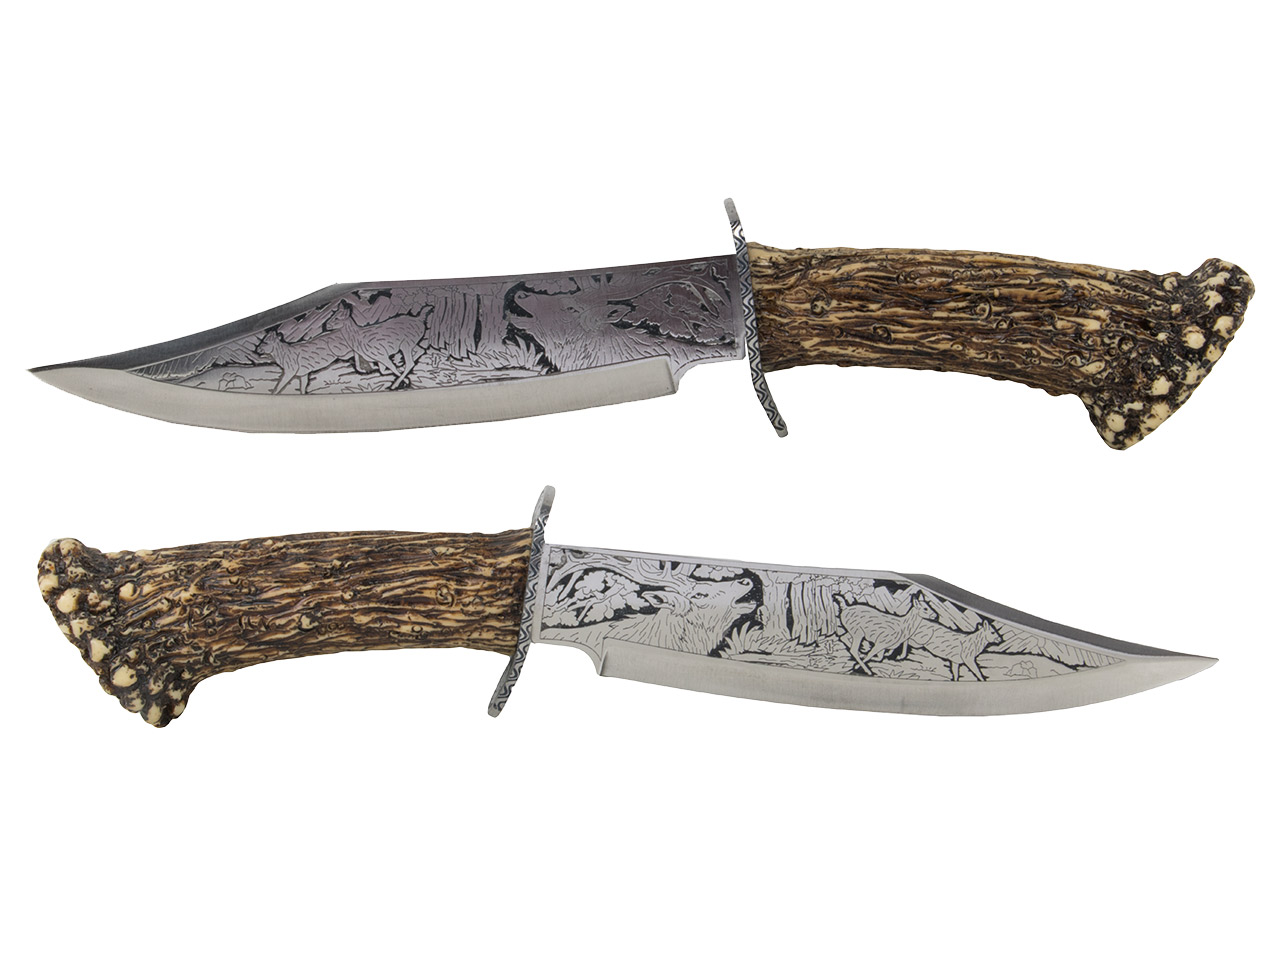 Dekoratives verziertes Messer mit Holzständer Gesamtlänge als Geweih 31,5 cm (P18)